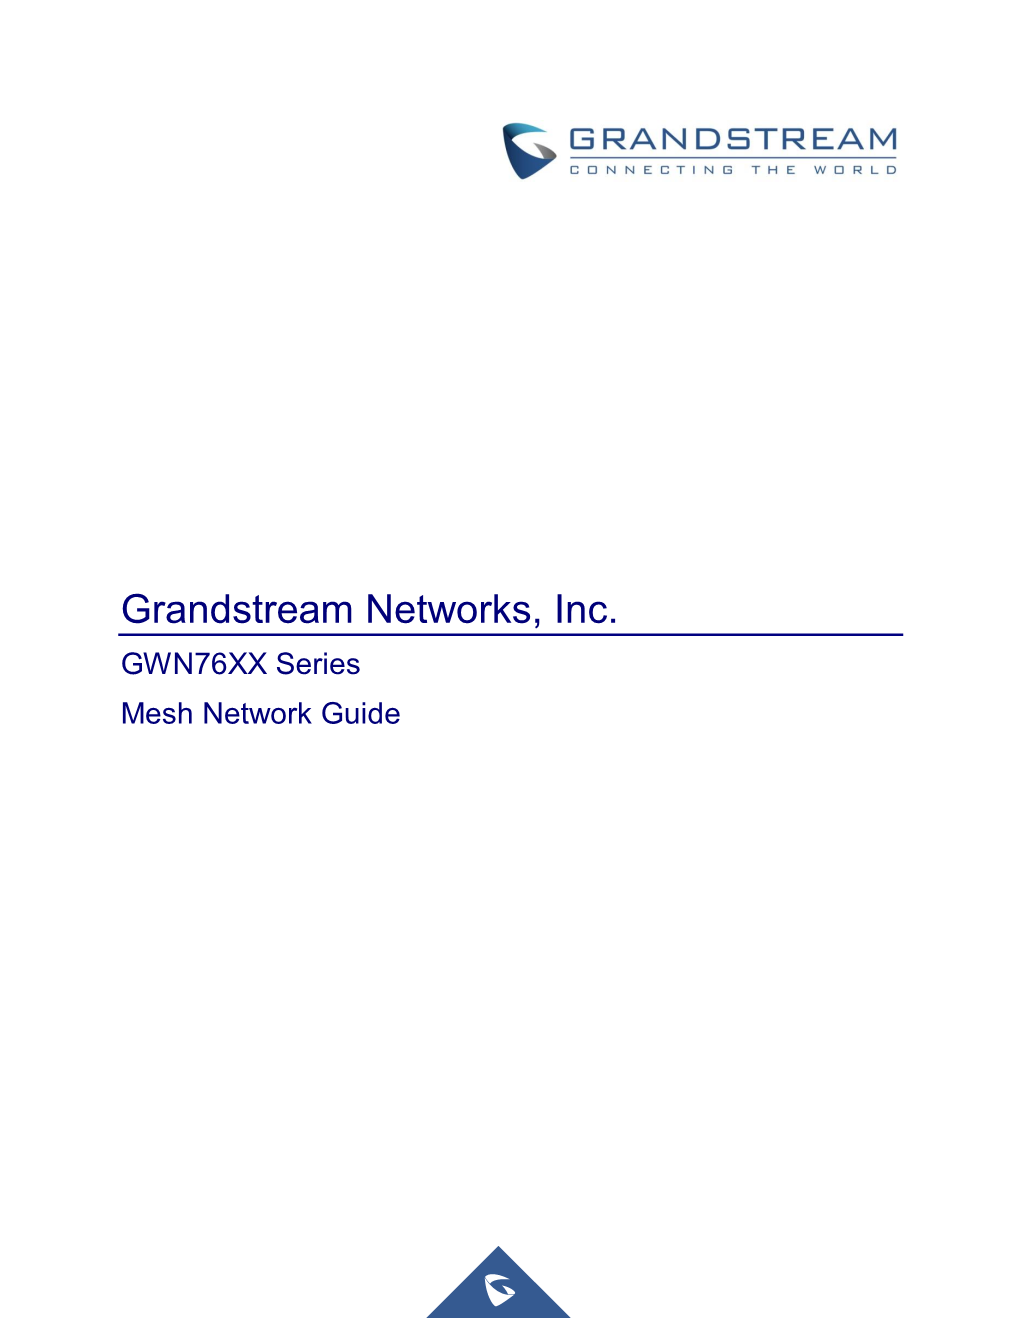 GWN76XX Series Mesh Network Guide